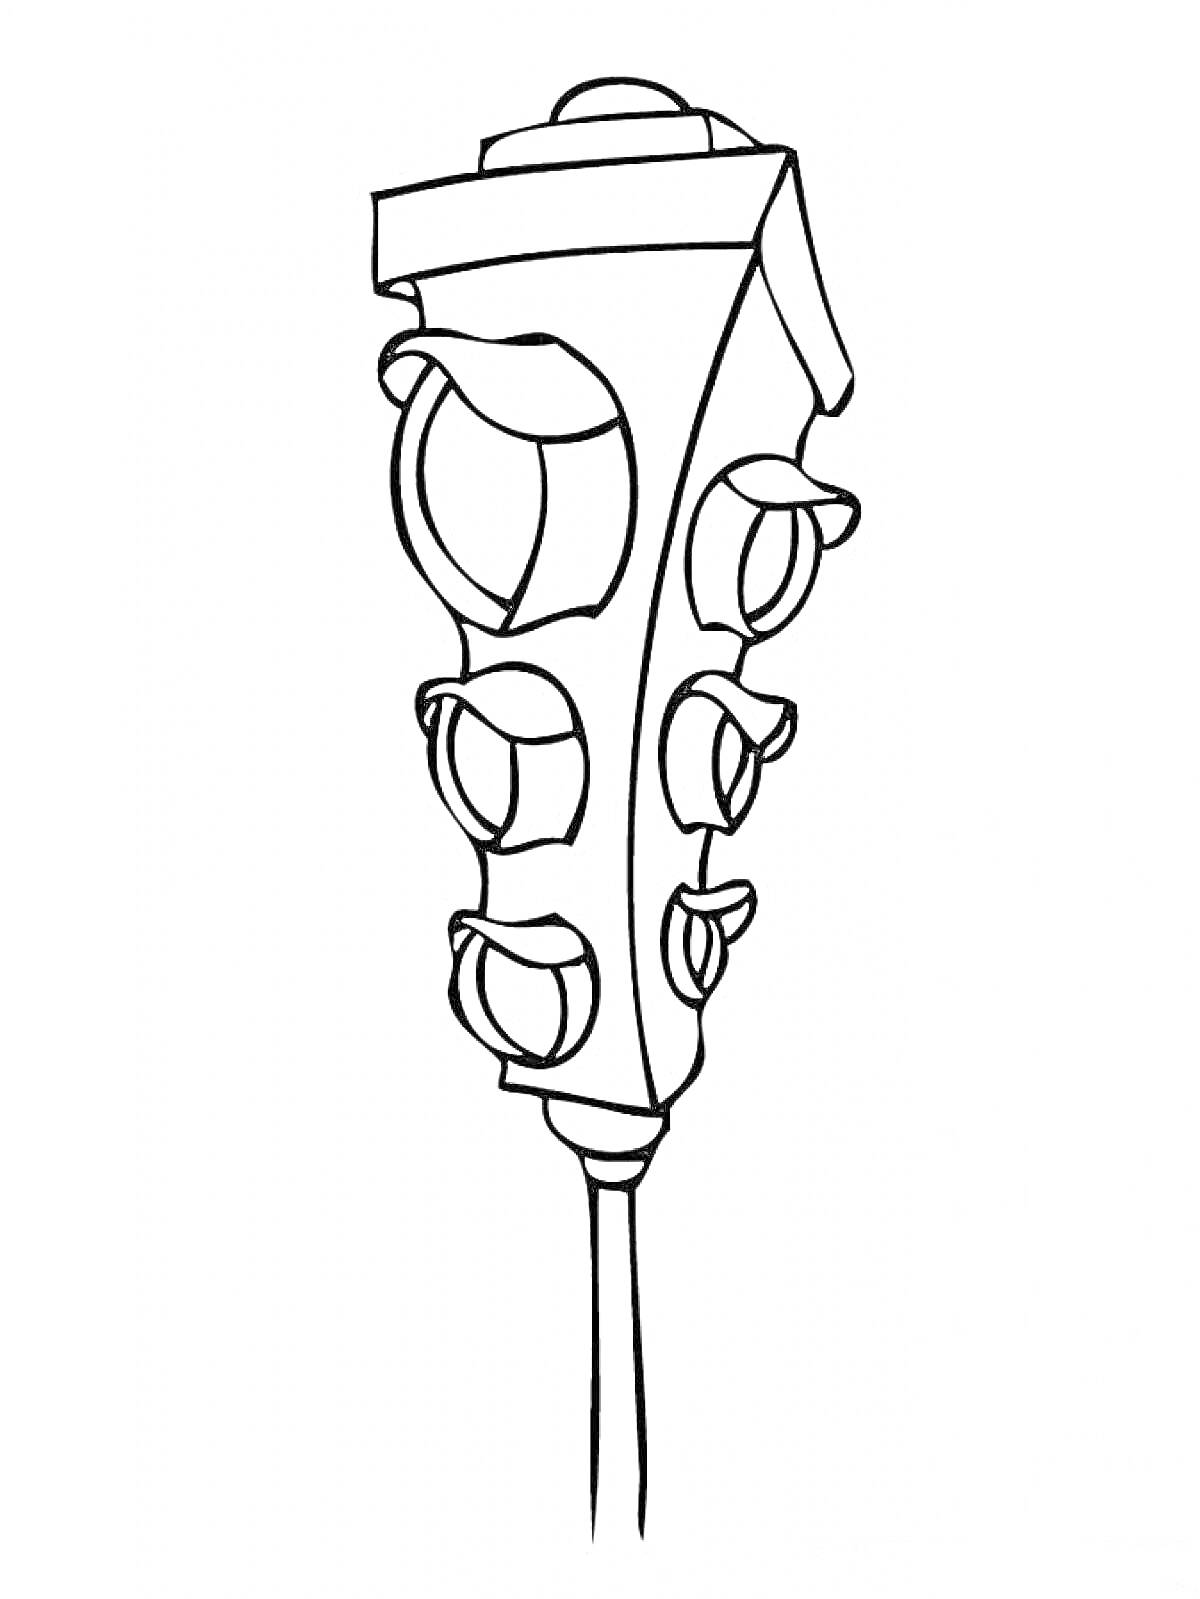 Раскраска Светофор с тремя лампами на каждом из четырех сторон, без цветов